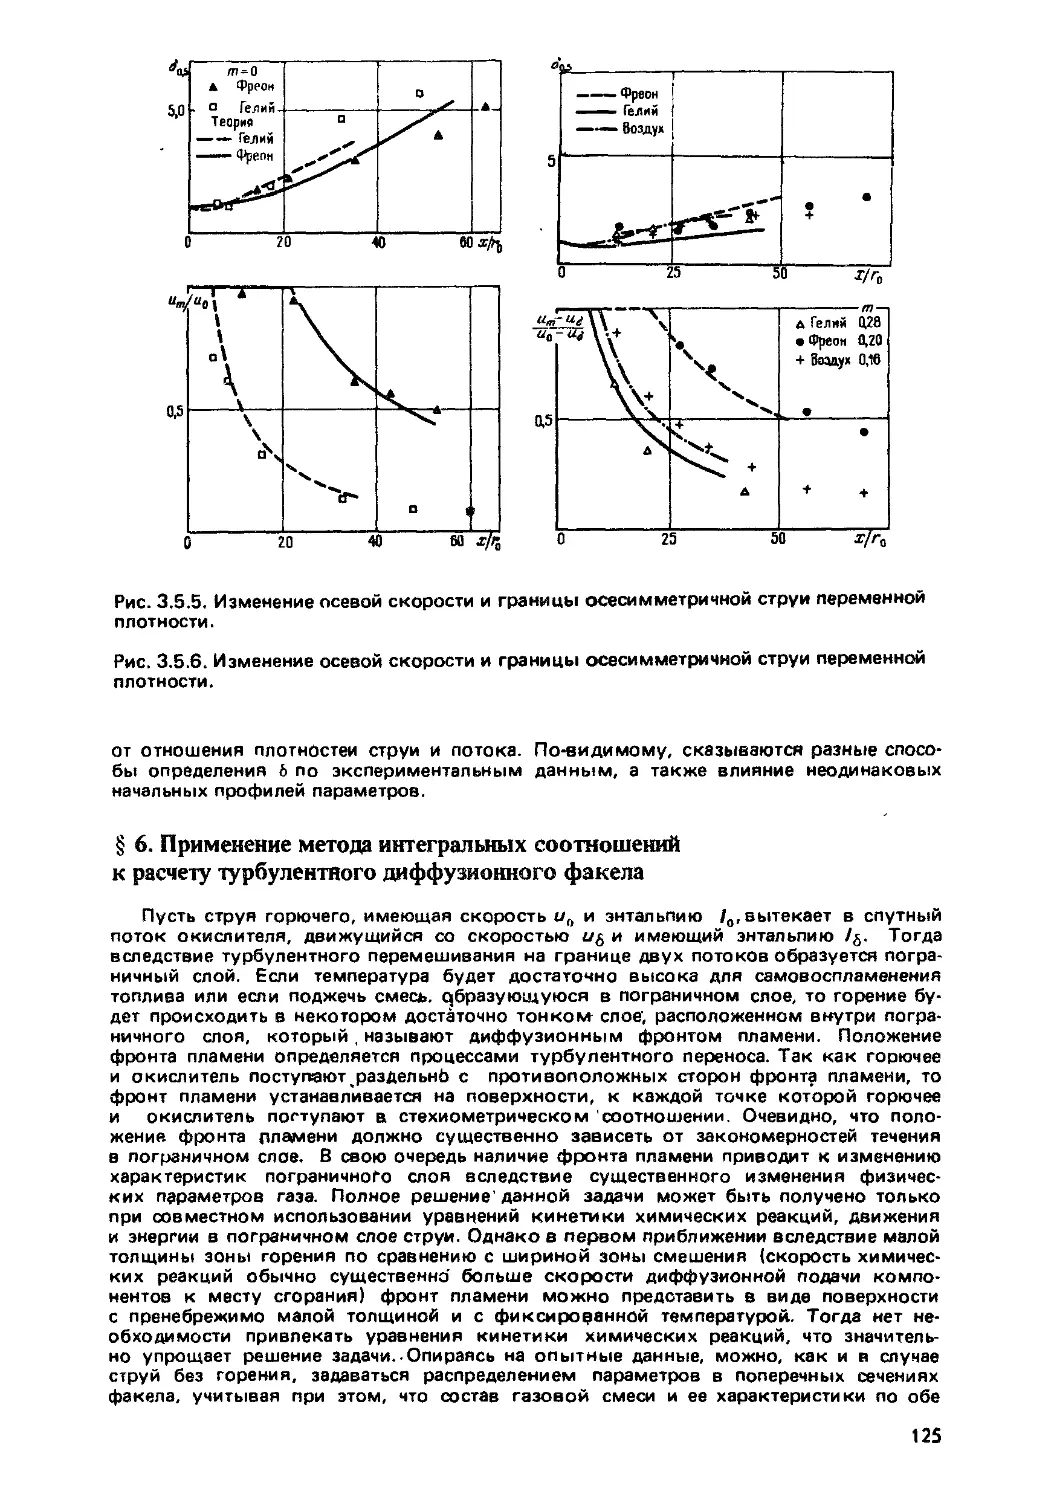 § 6. Применение метода интегральных соотношений к расчету турбулентного диффузионного факела